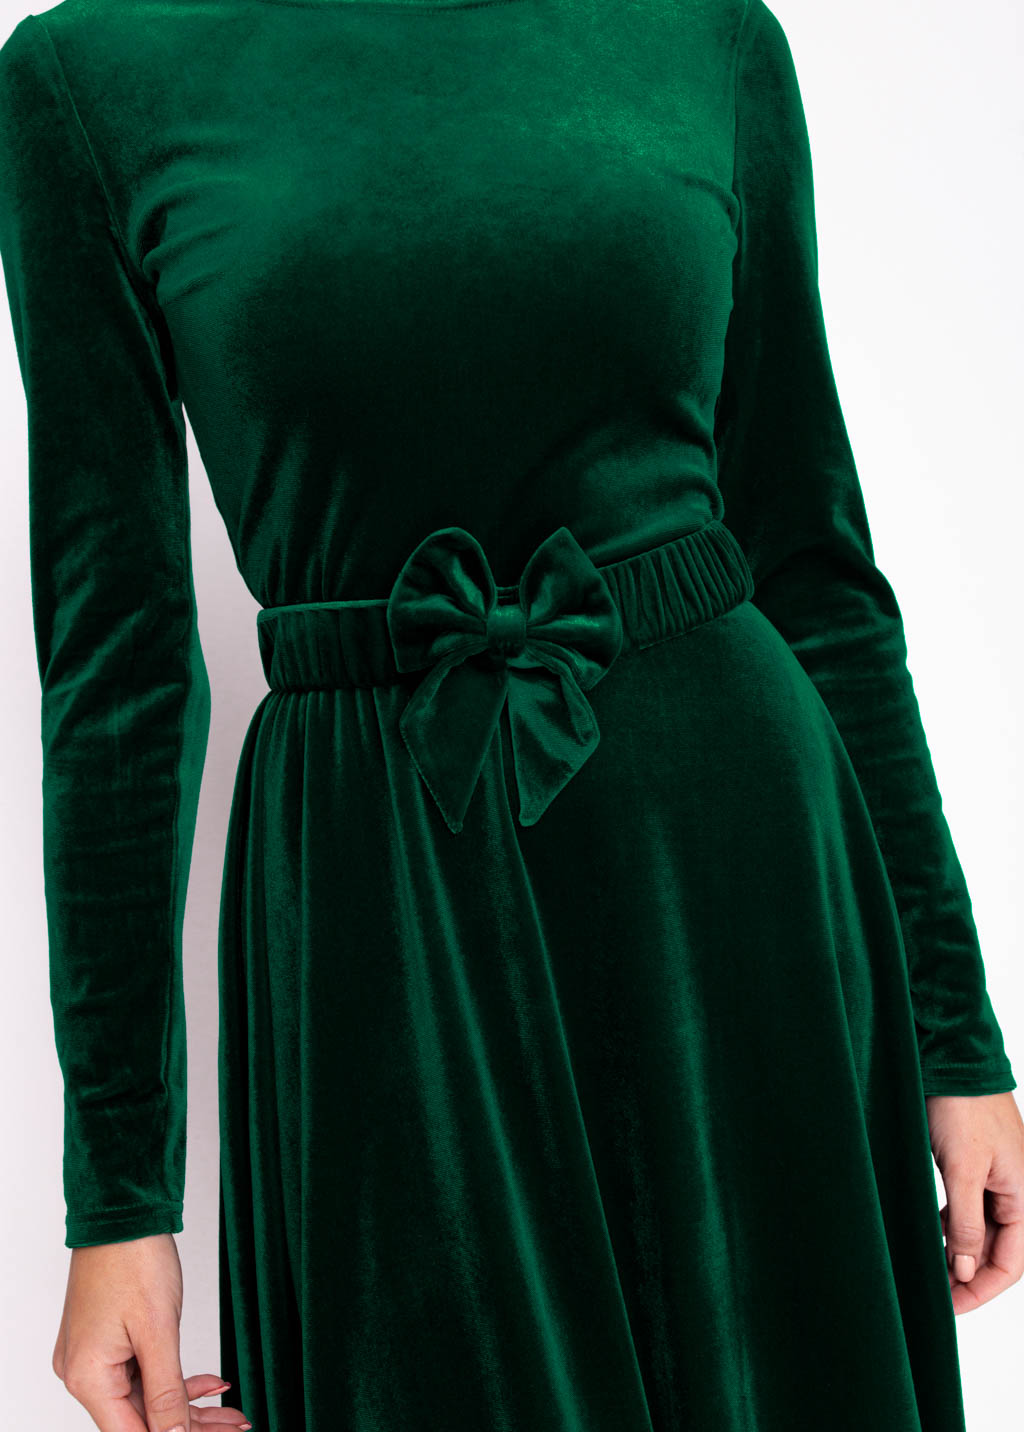 Emerald green velvet long dress with belt